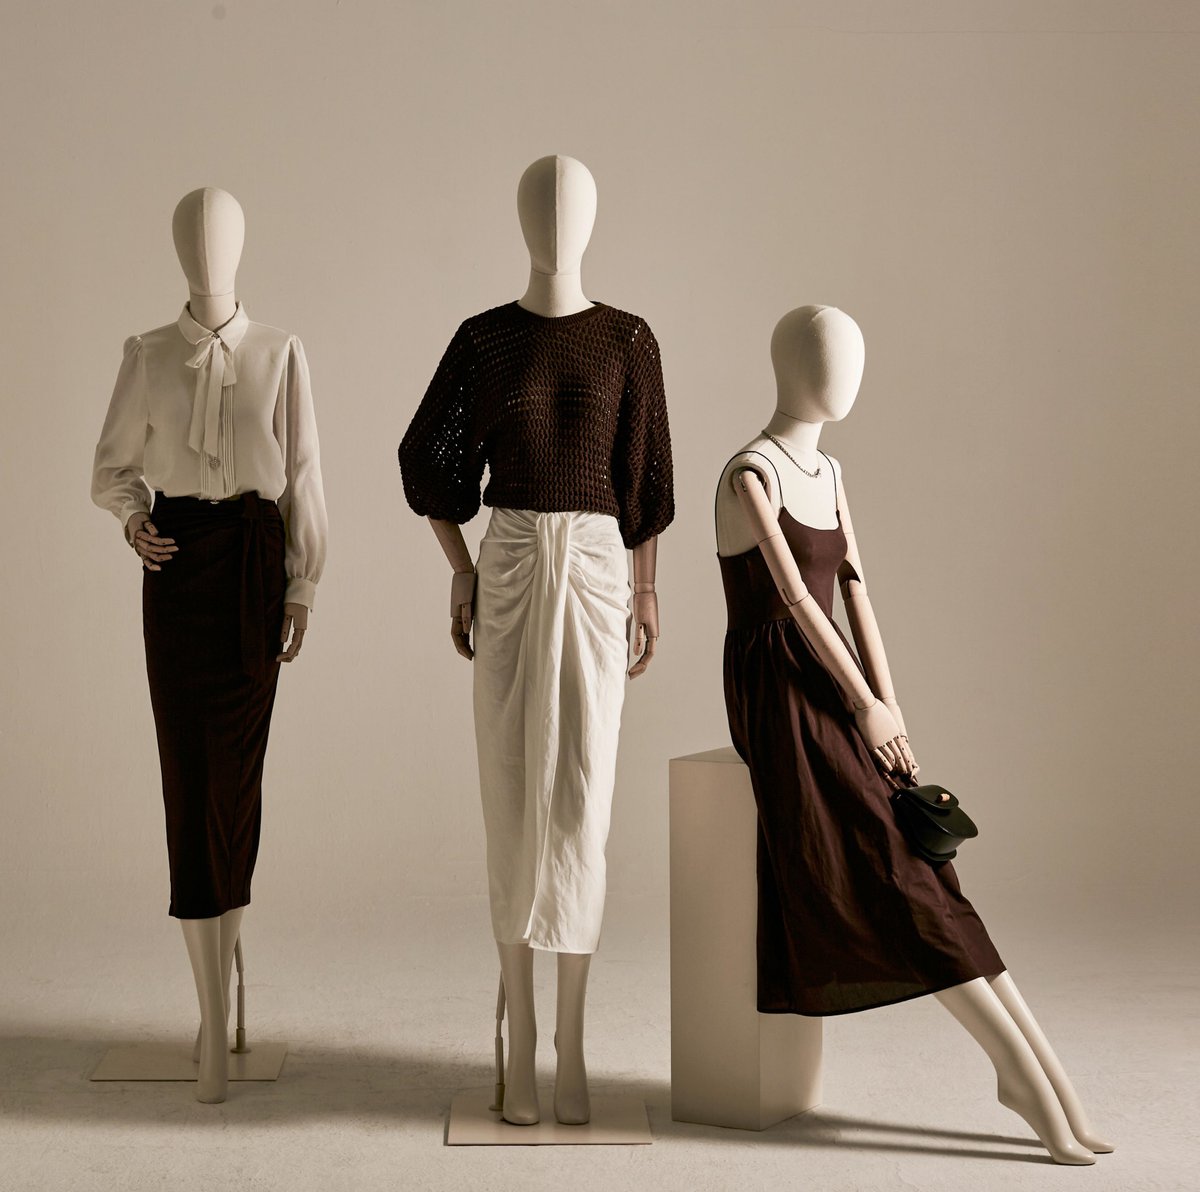 fabric female mannequins.
#fabricmannequin
#femalemannequins
#casualmannequins
#sustainable